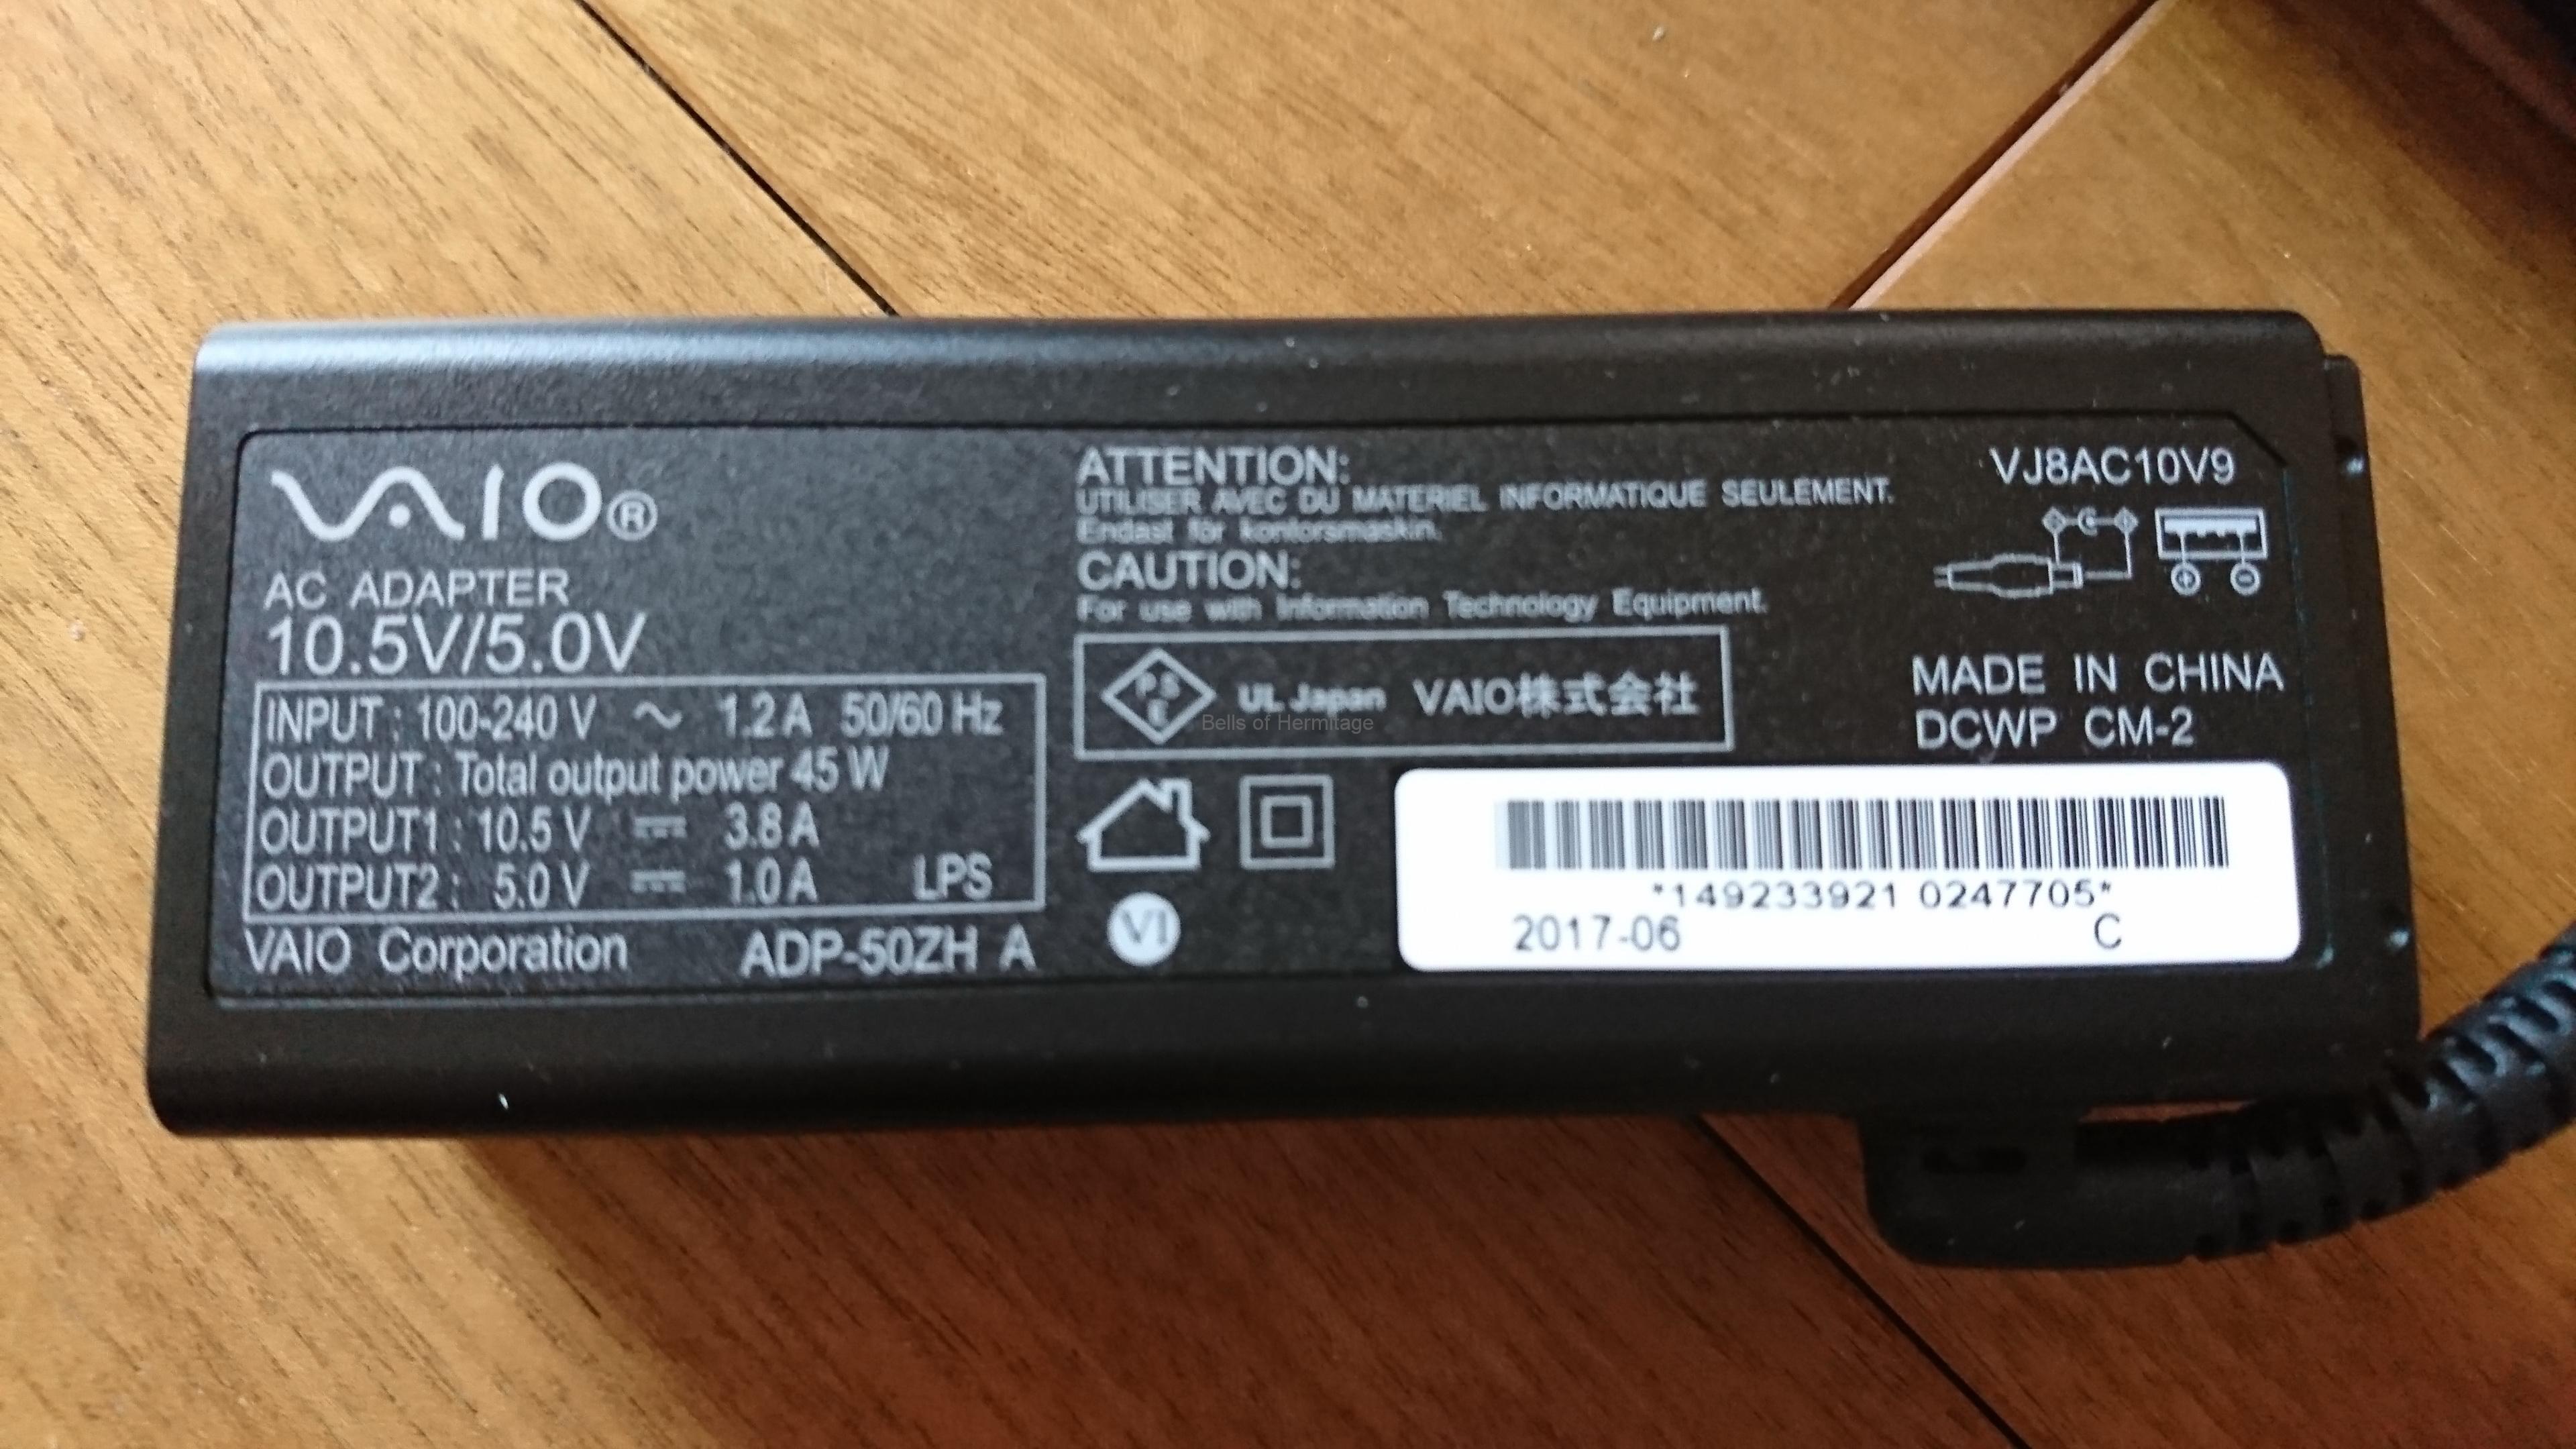 SONY VAIO ACアダプター VJ8AC10V9 45W USBポート付